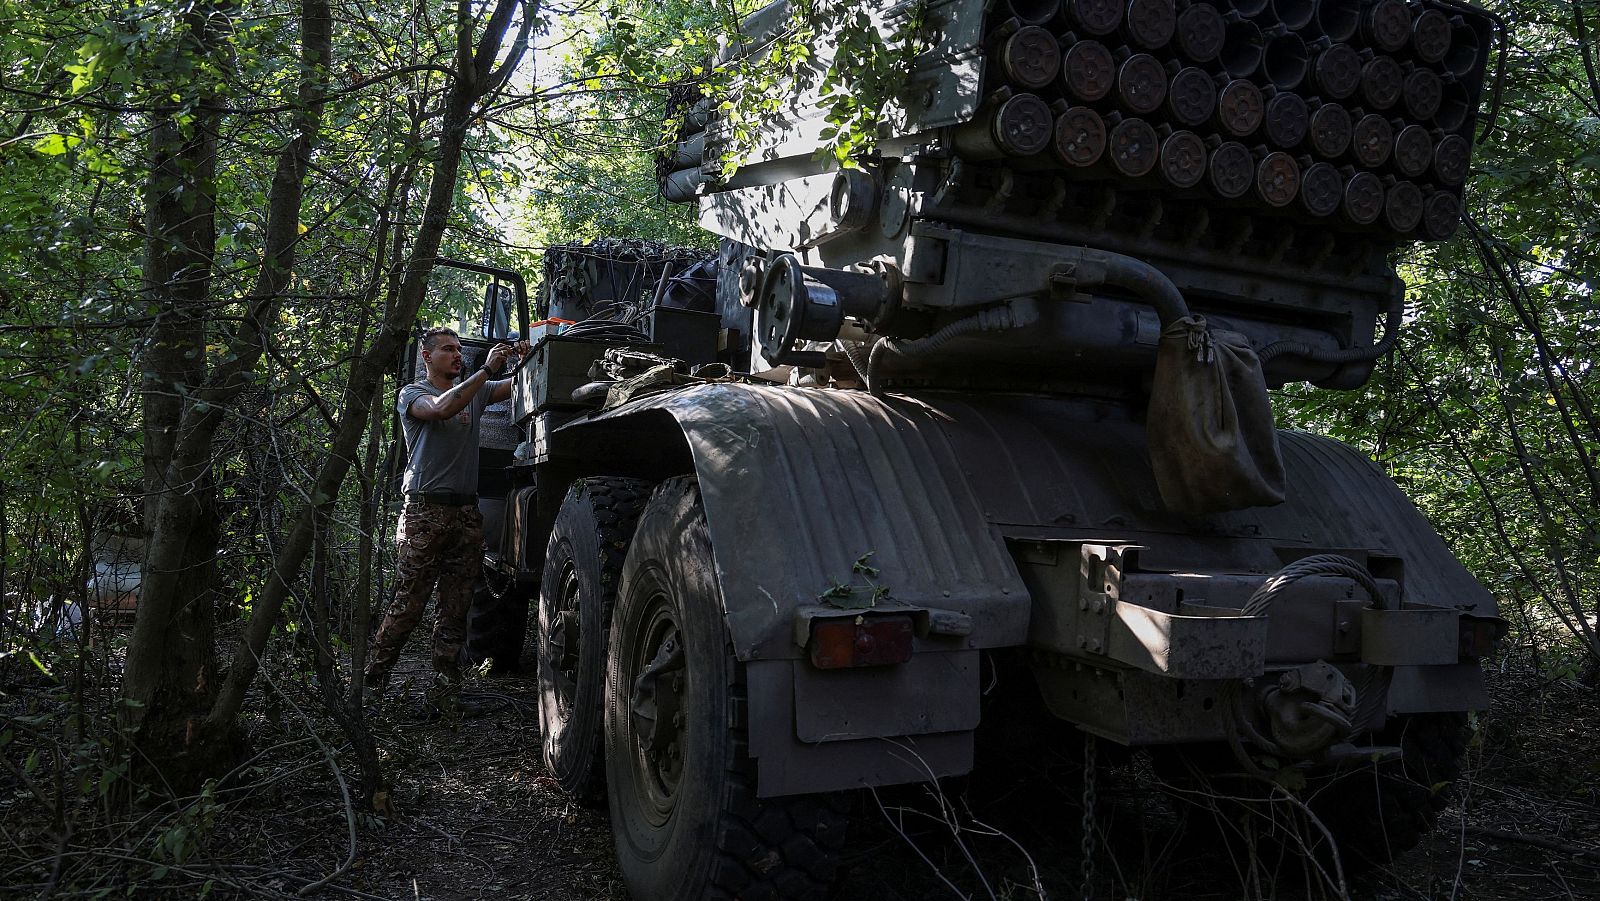 Guerra entre Rusia y Ucrania